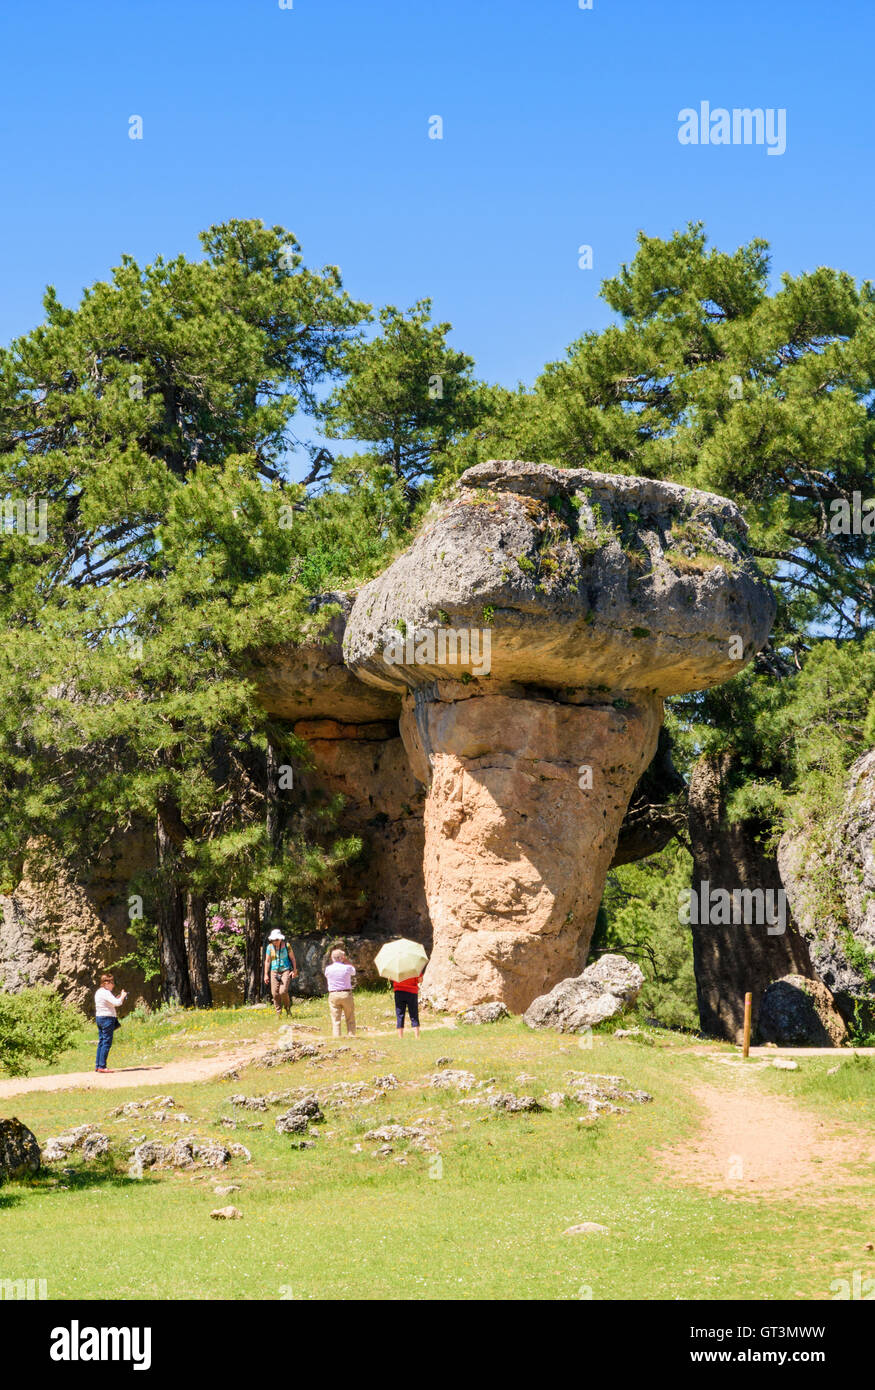 Les touristes à la découverte des rochers façonnés par l'érosion dans la Ciudad Encantada près de Cuenca, Espagne Banque D'Images